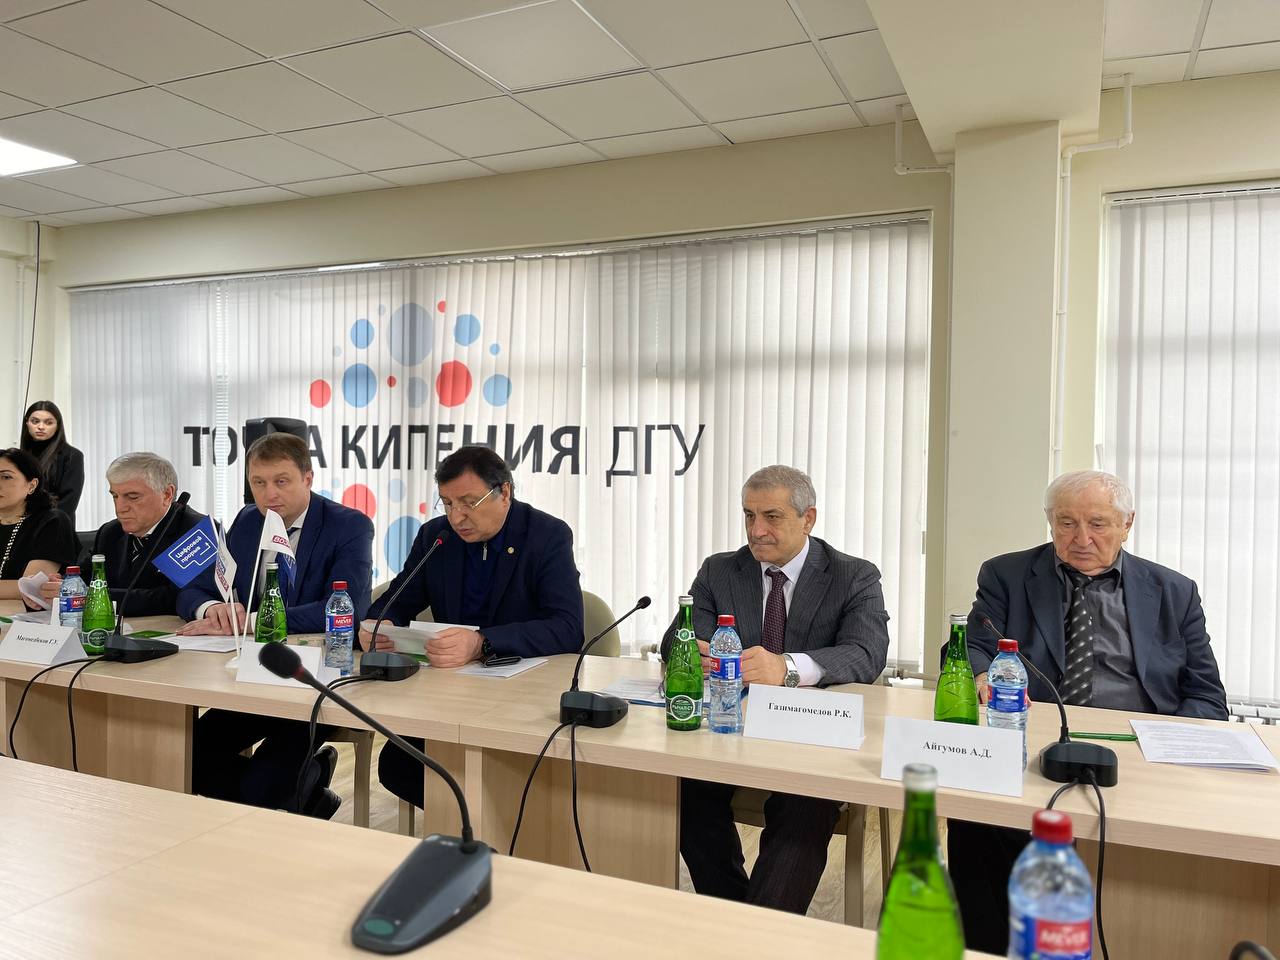 Конференция памяти Абдурахмана Гусейнова прошла в ДГУ